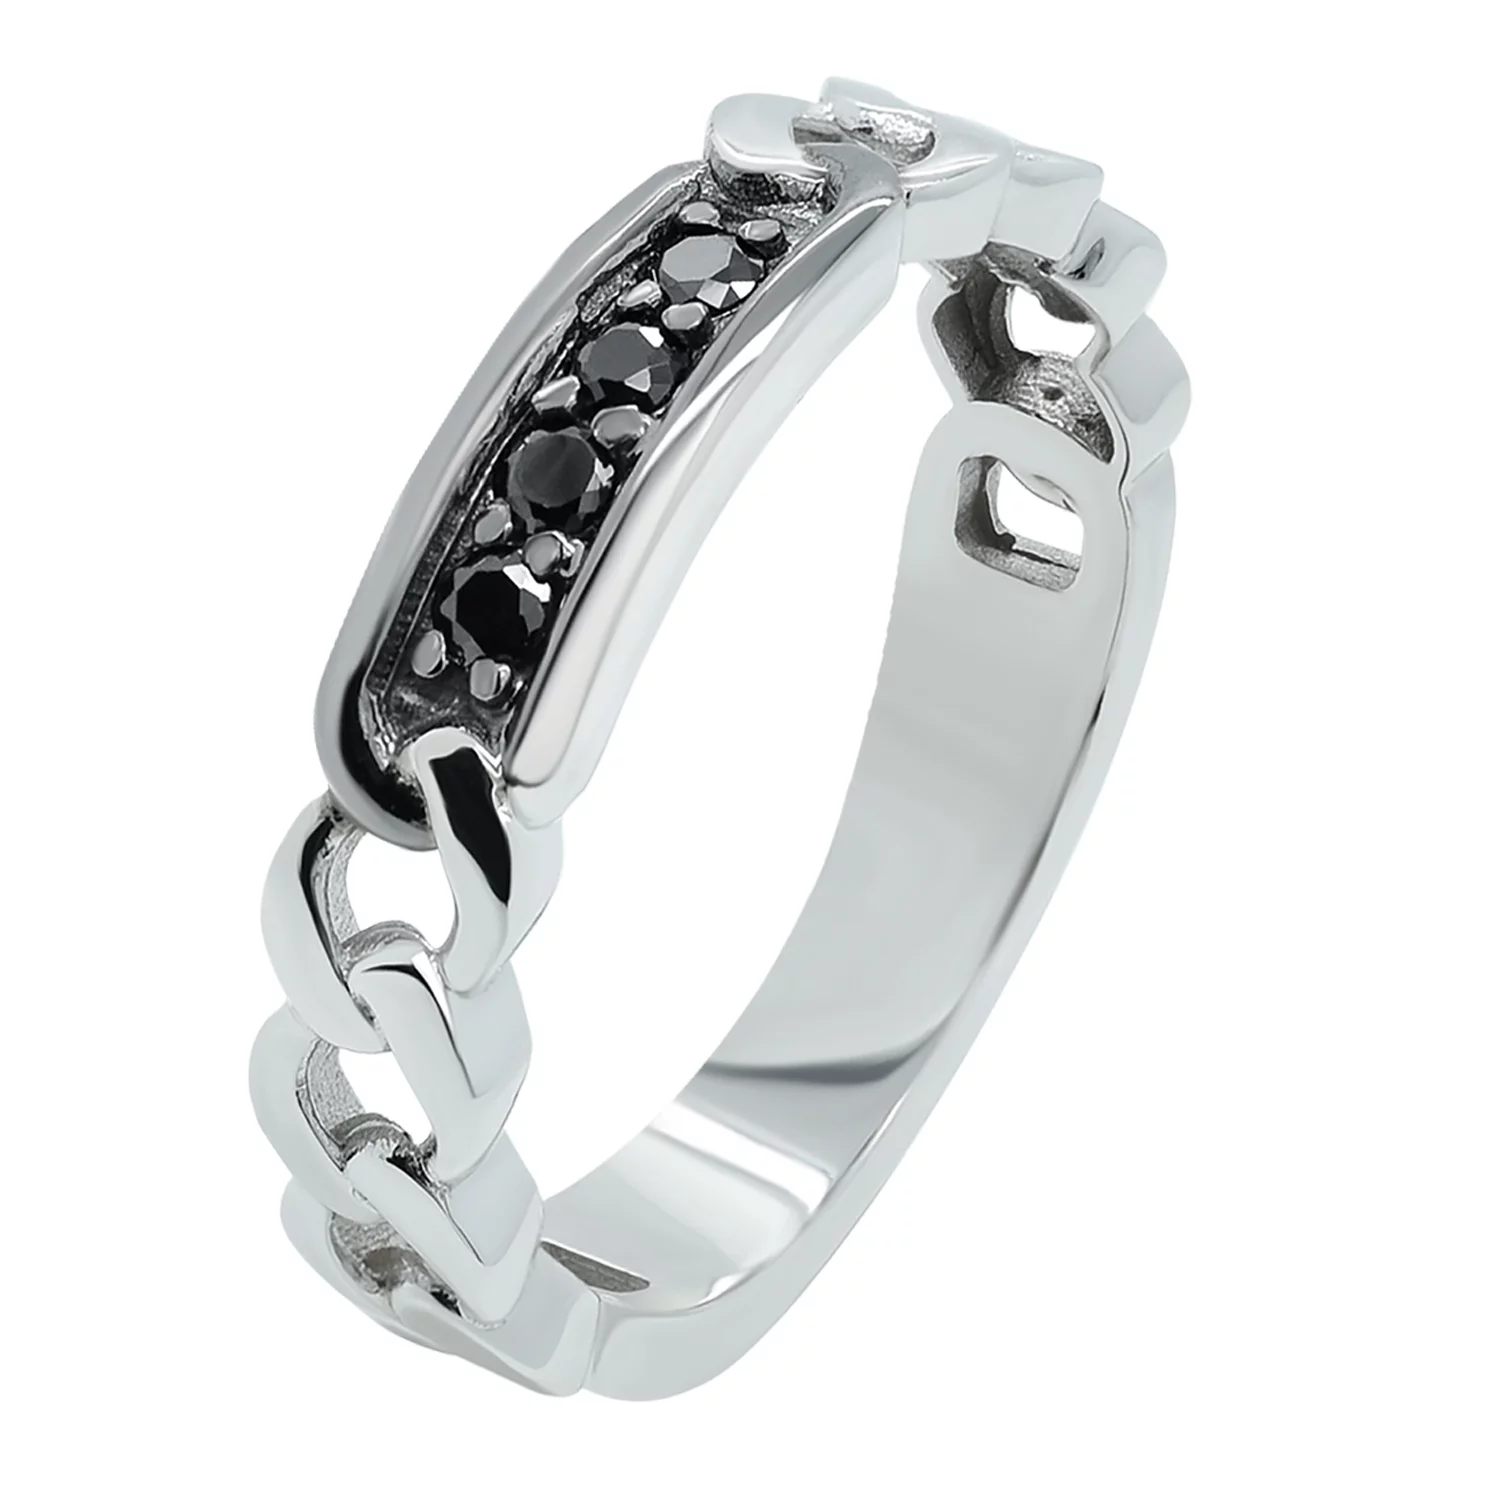 Перстень из белого золота с фианитом Звенья. Артикул КП003/1ч: цена, отзывы, фото – купить в интернет-магазине AURUM